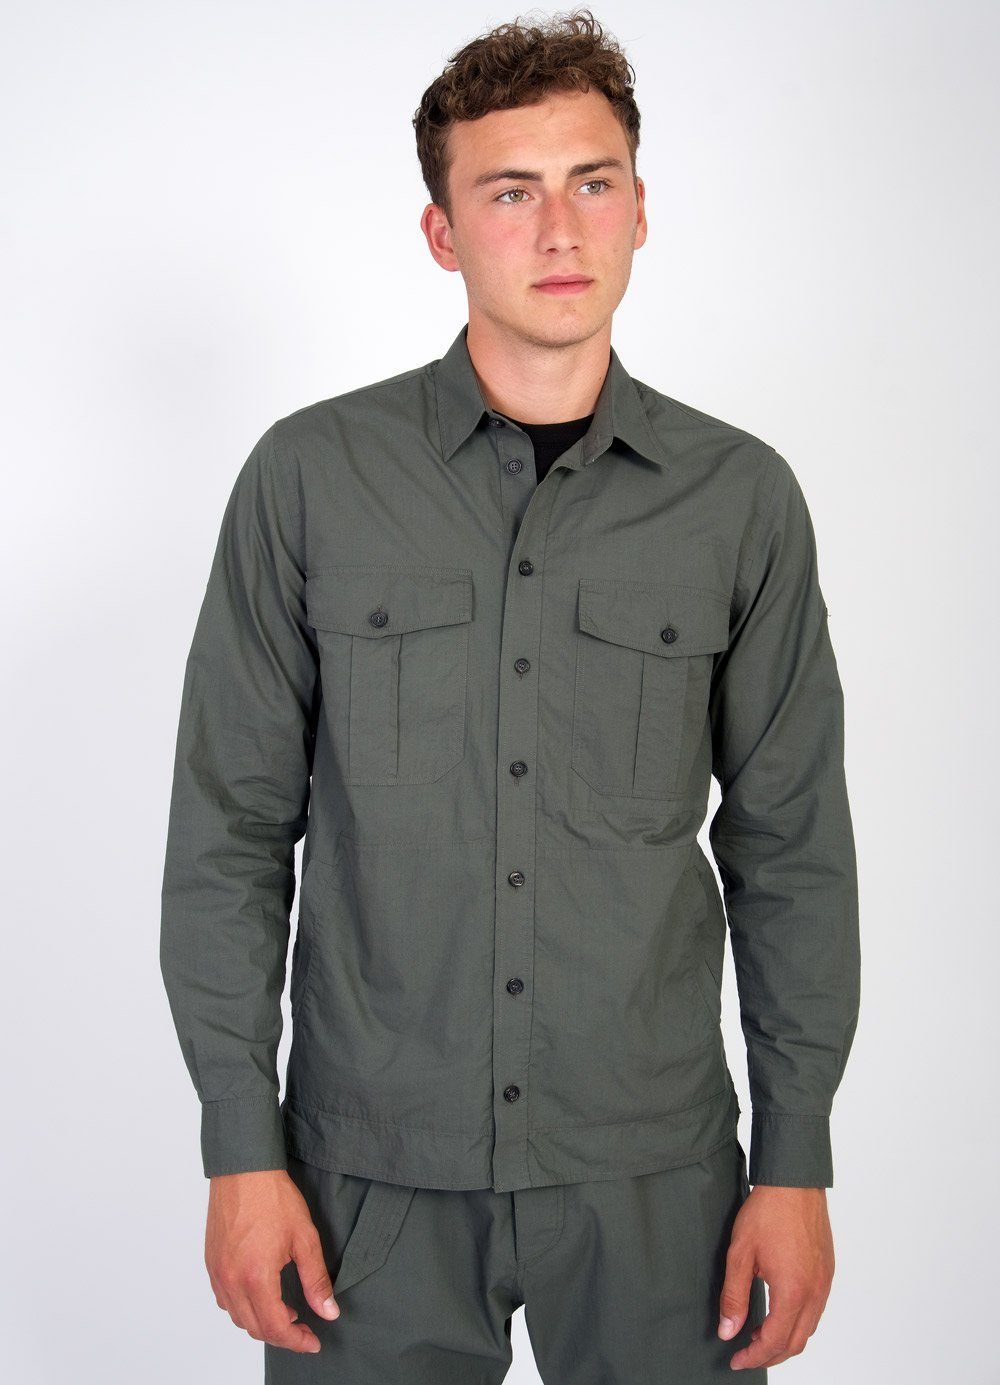 STEVEN | Lightweight Ranger Shirt | Faded Army | €230 -HANSEN Garments- HANSEN Garments